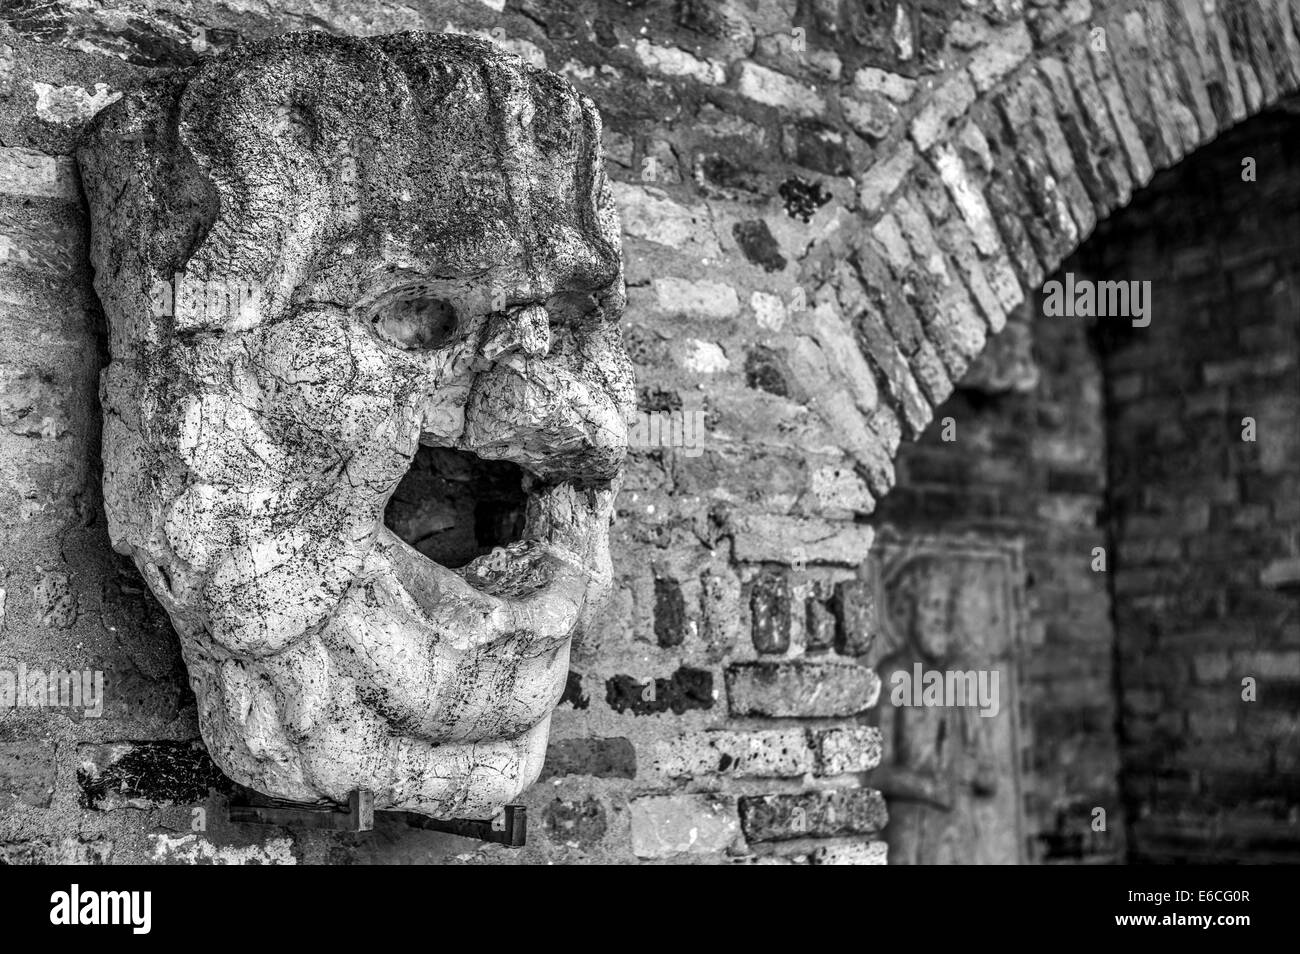 Schwarzen & weißen HDR-Bild der mittelalterlichen Relief Maske Gesicht Skulptur in Torcello Museum auf der Insel Torcello in der Lagune von Venedig. Stockfoto